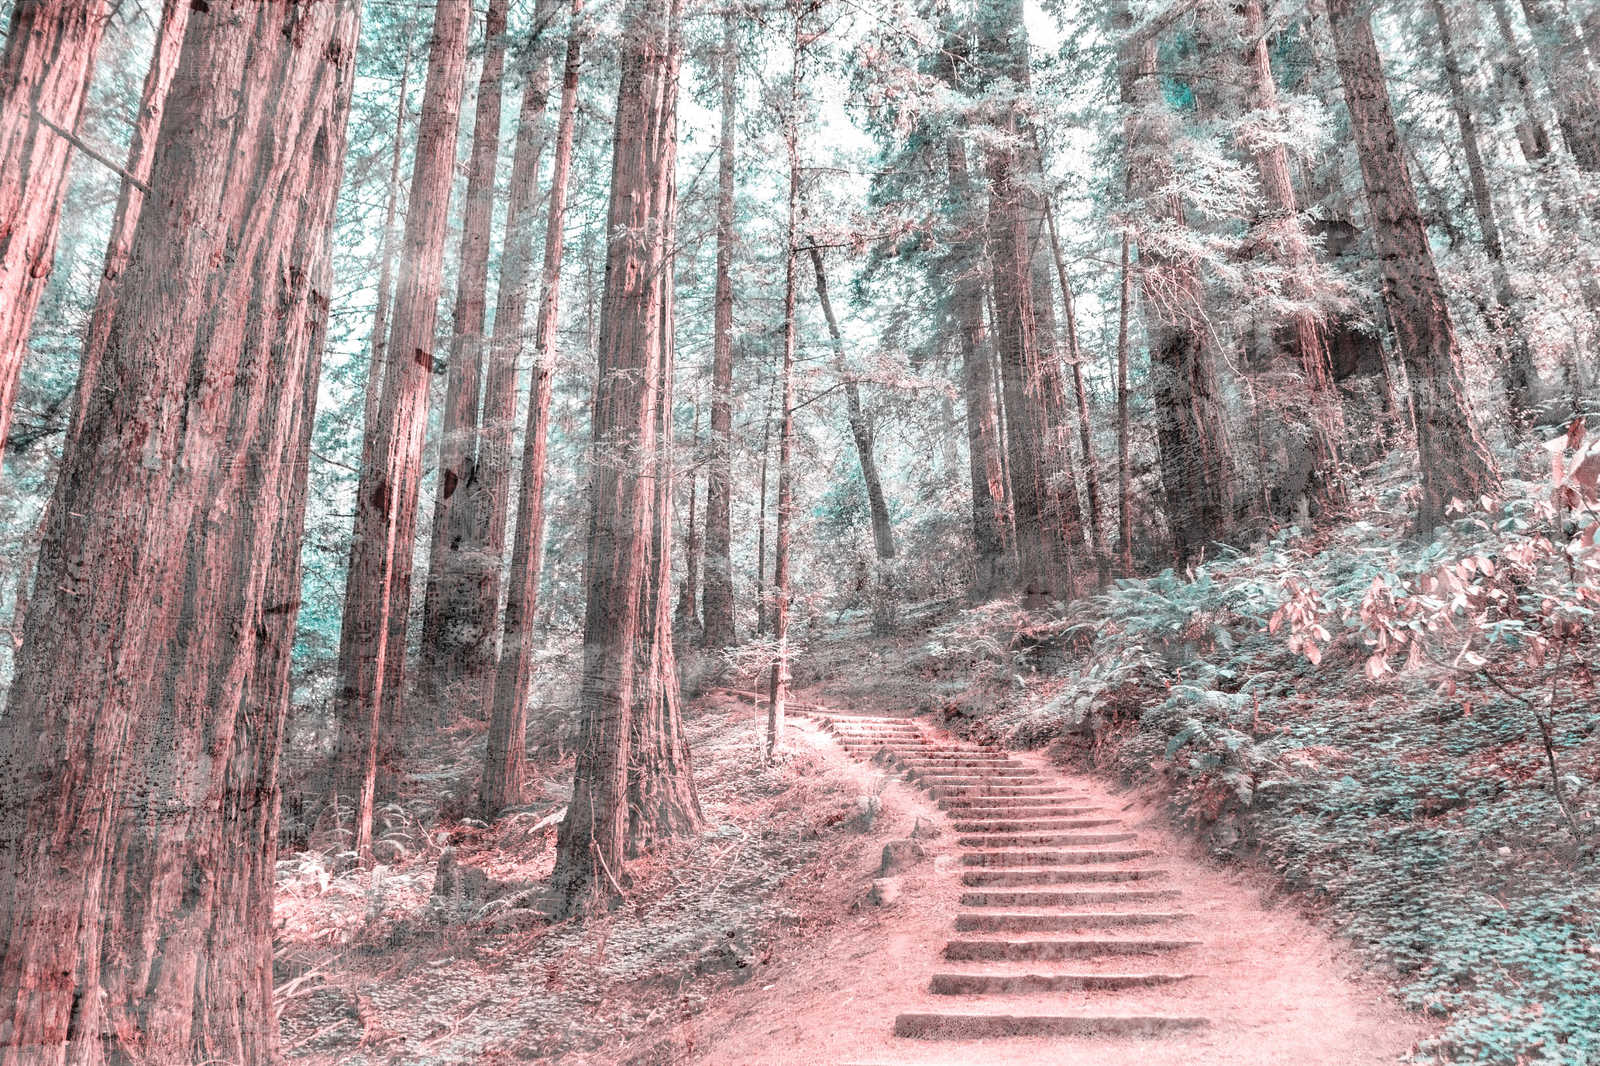             Leinwand mit Holztreppe durch den Wald | braun, grün, weiß – 0,90 m x 0,60 m
        